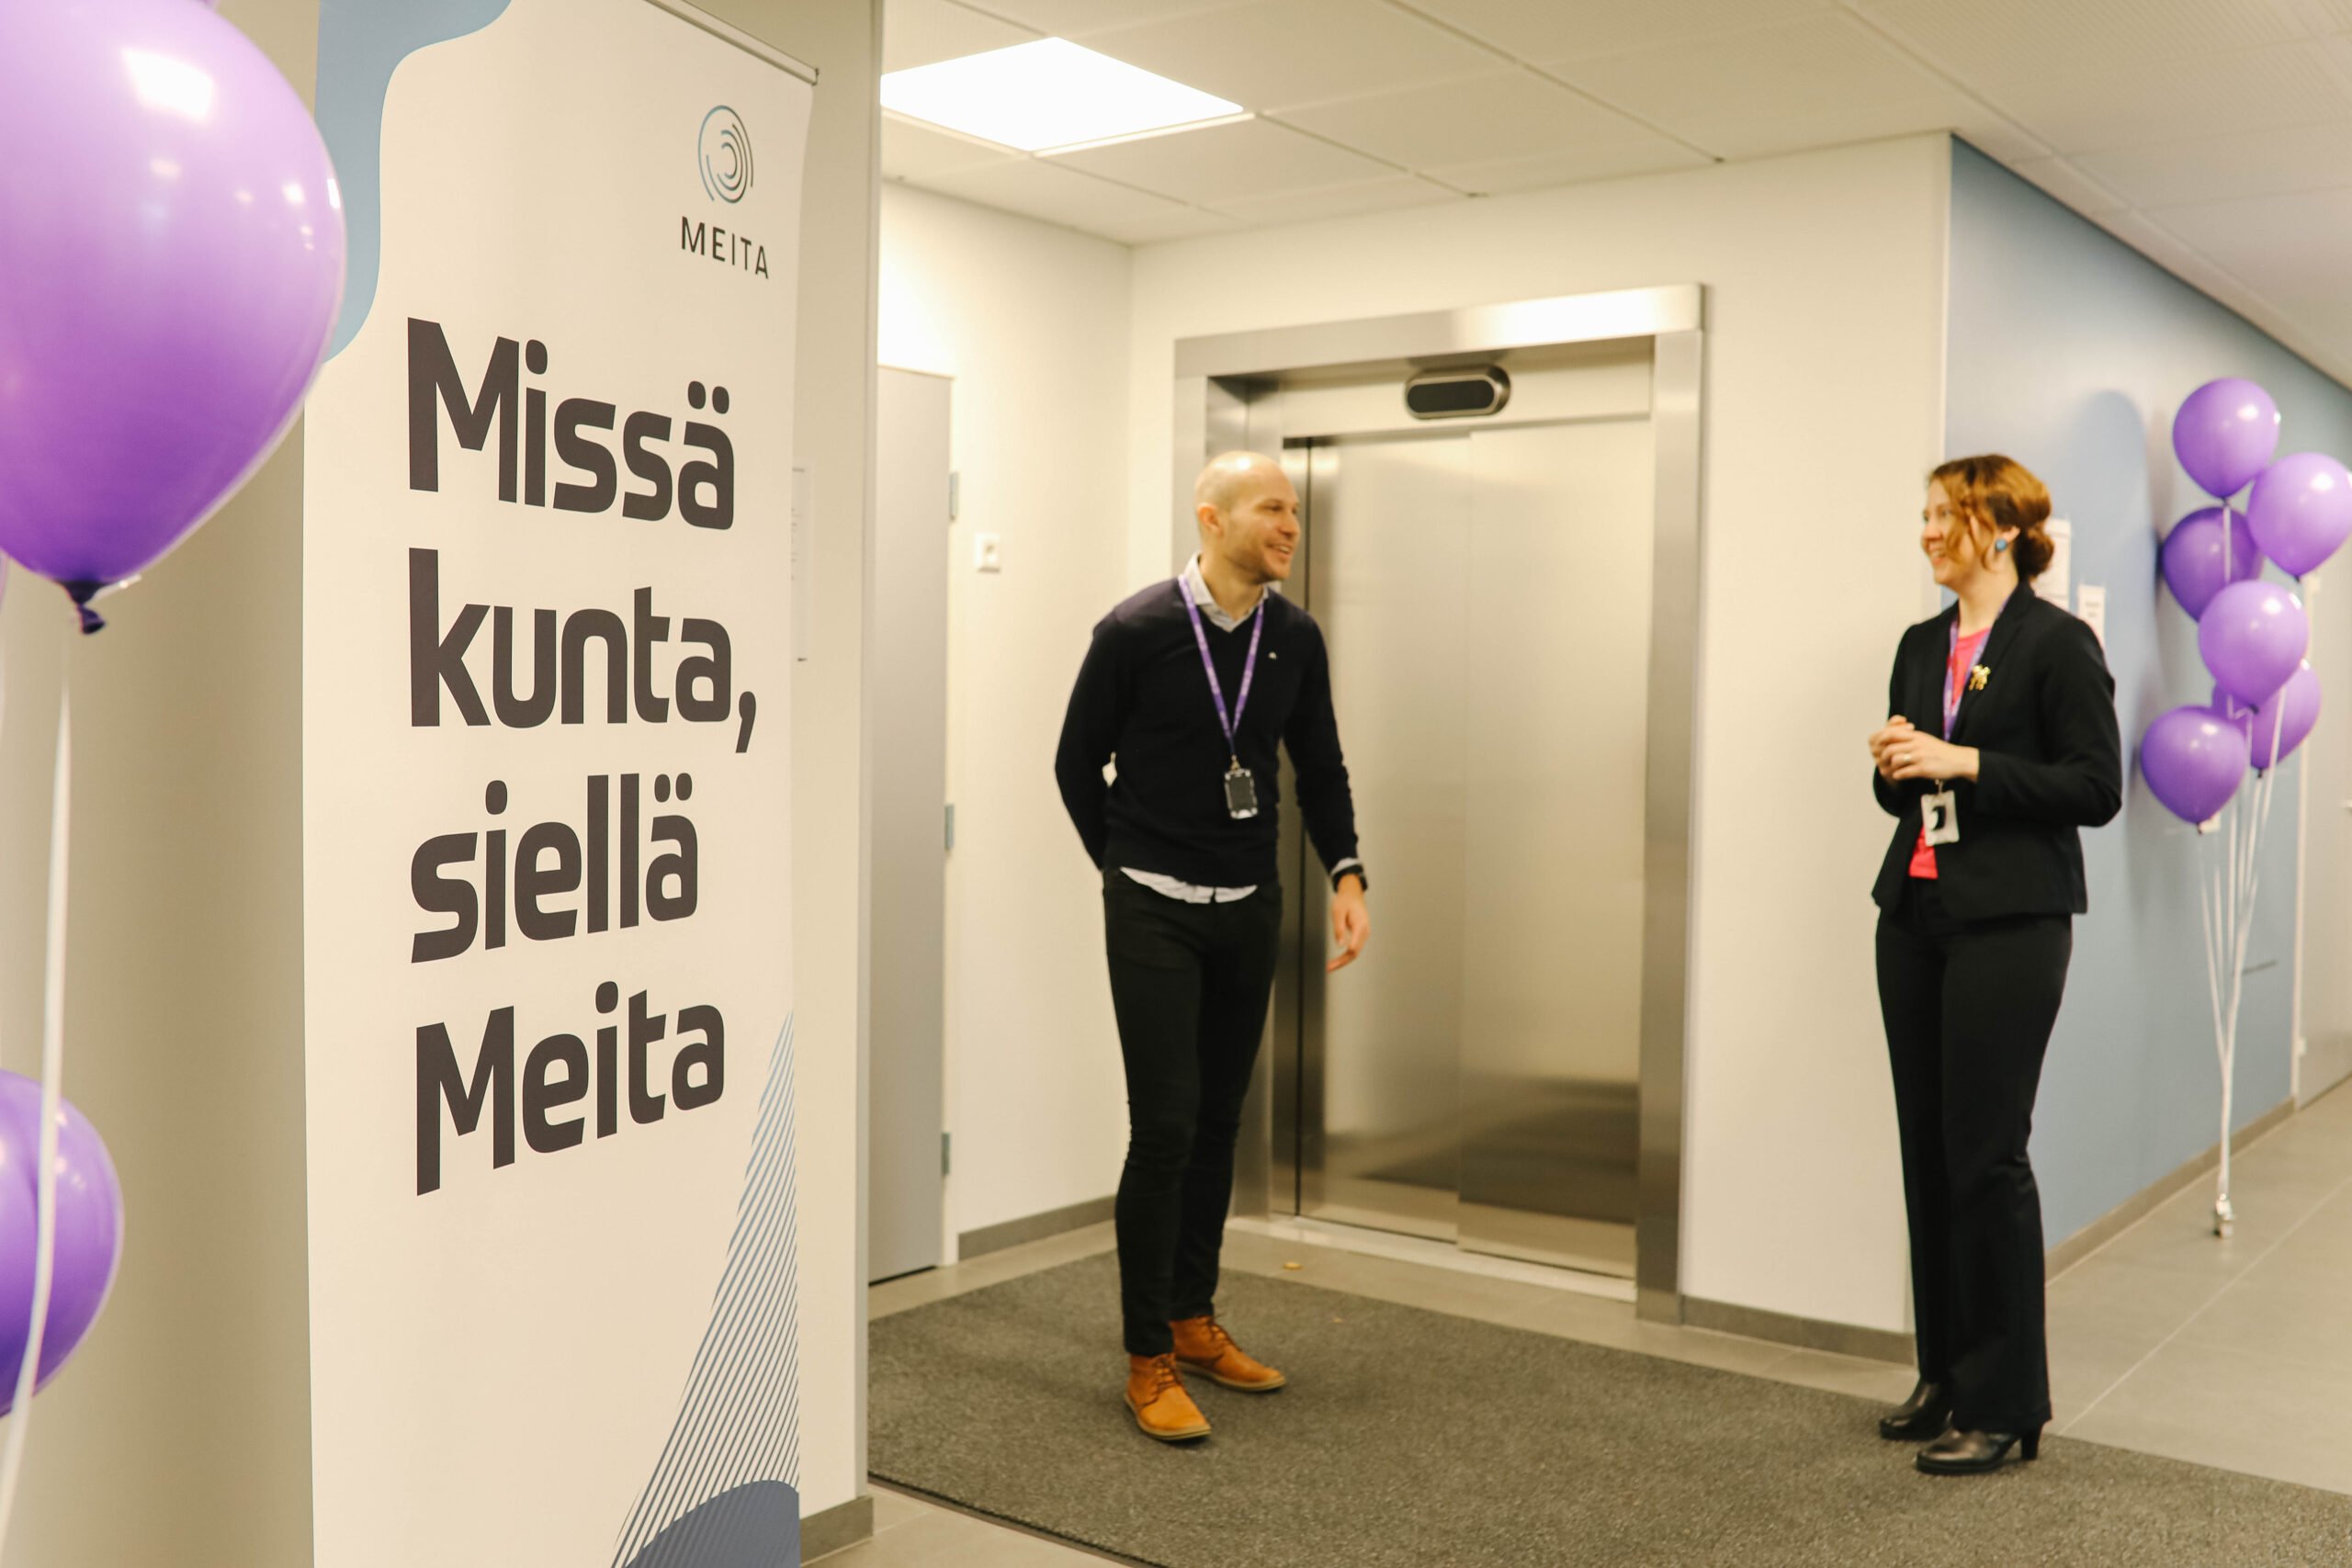 Tässä kuvassa on kaksi meitalaisia ja Meitan roll-up Mikkelin toimiston aulassa